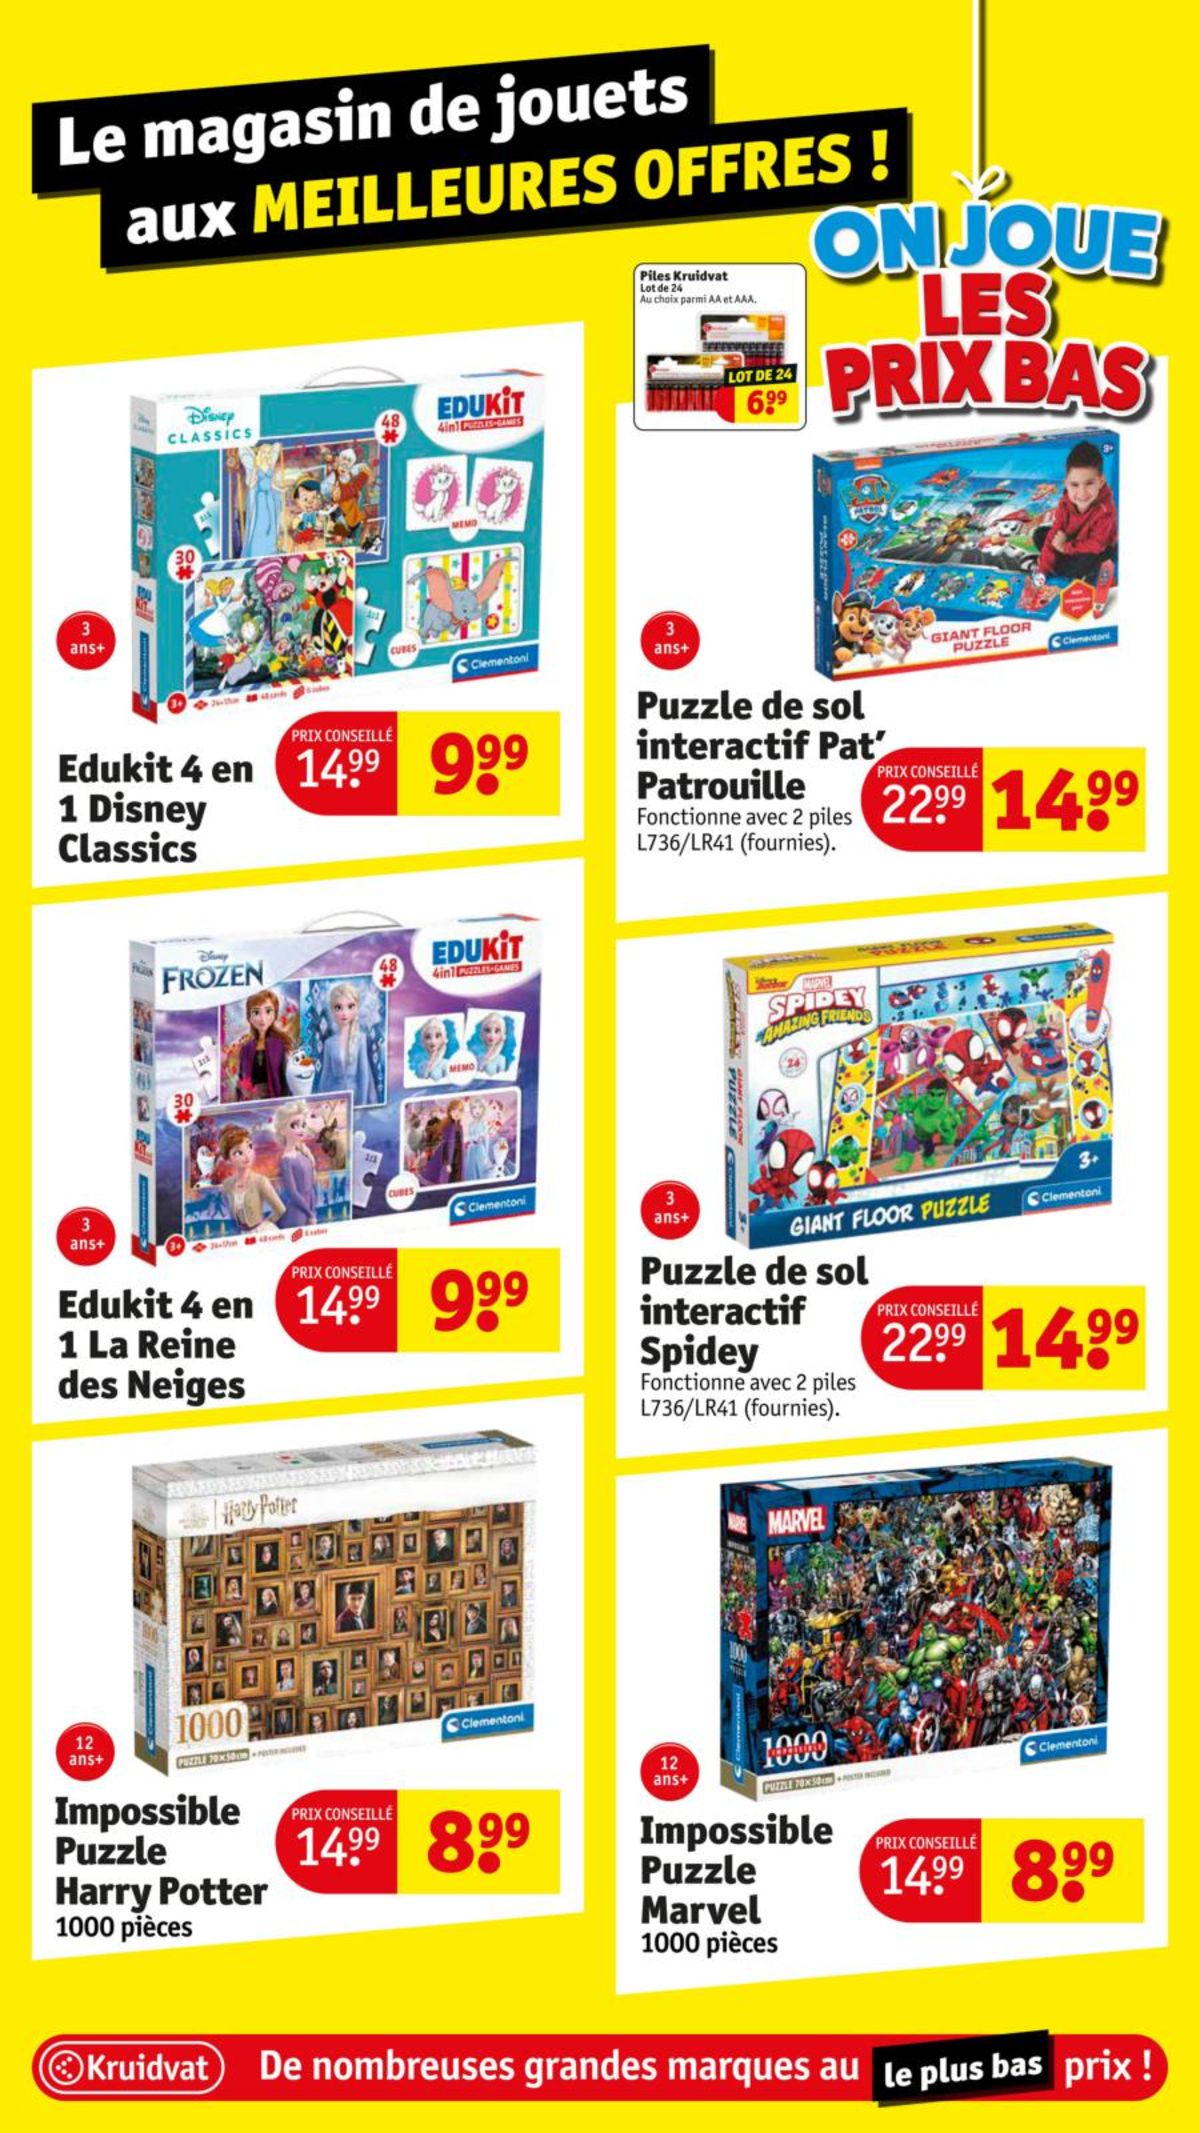 Catalogue Le magasin de jouets aux meilleures offres !, page 00019